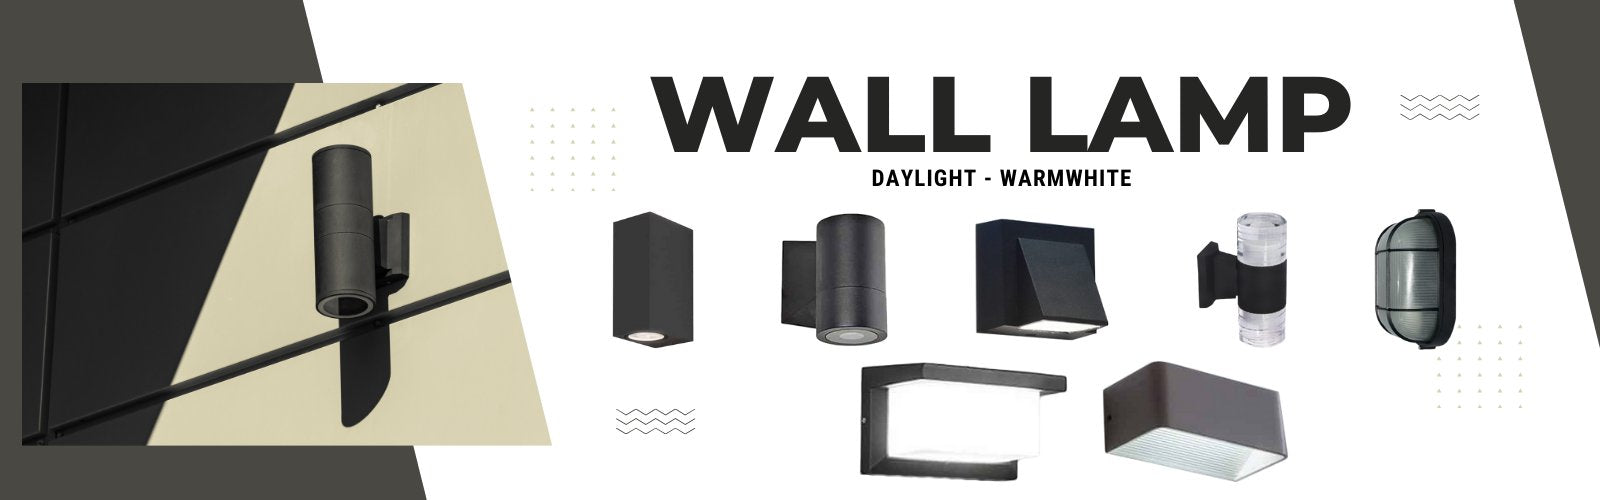 Led Wall Lamp Ecoshift Shopify